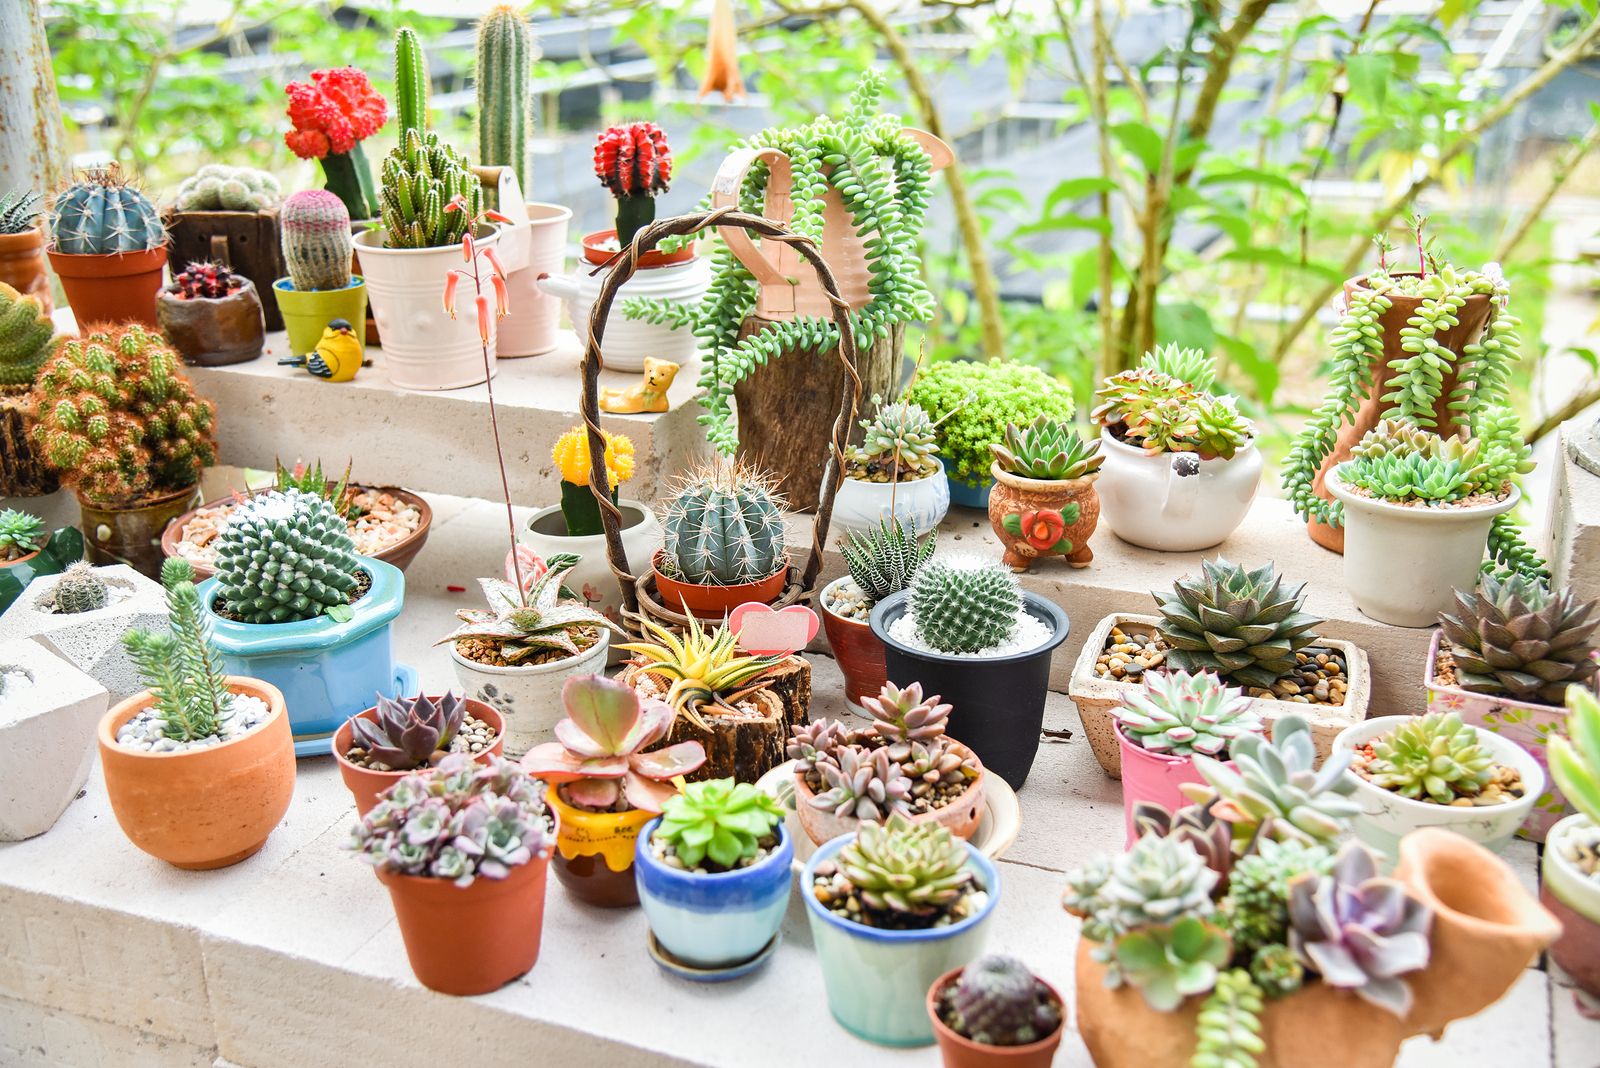 Beneficios de tener un cactus en casa, según el Feng Shui